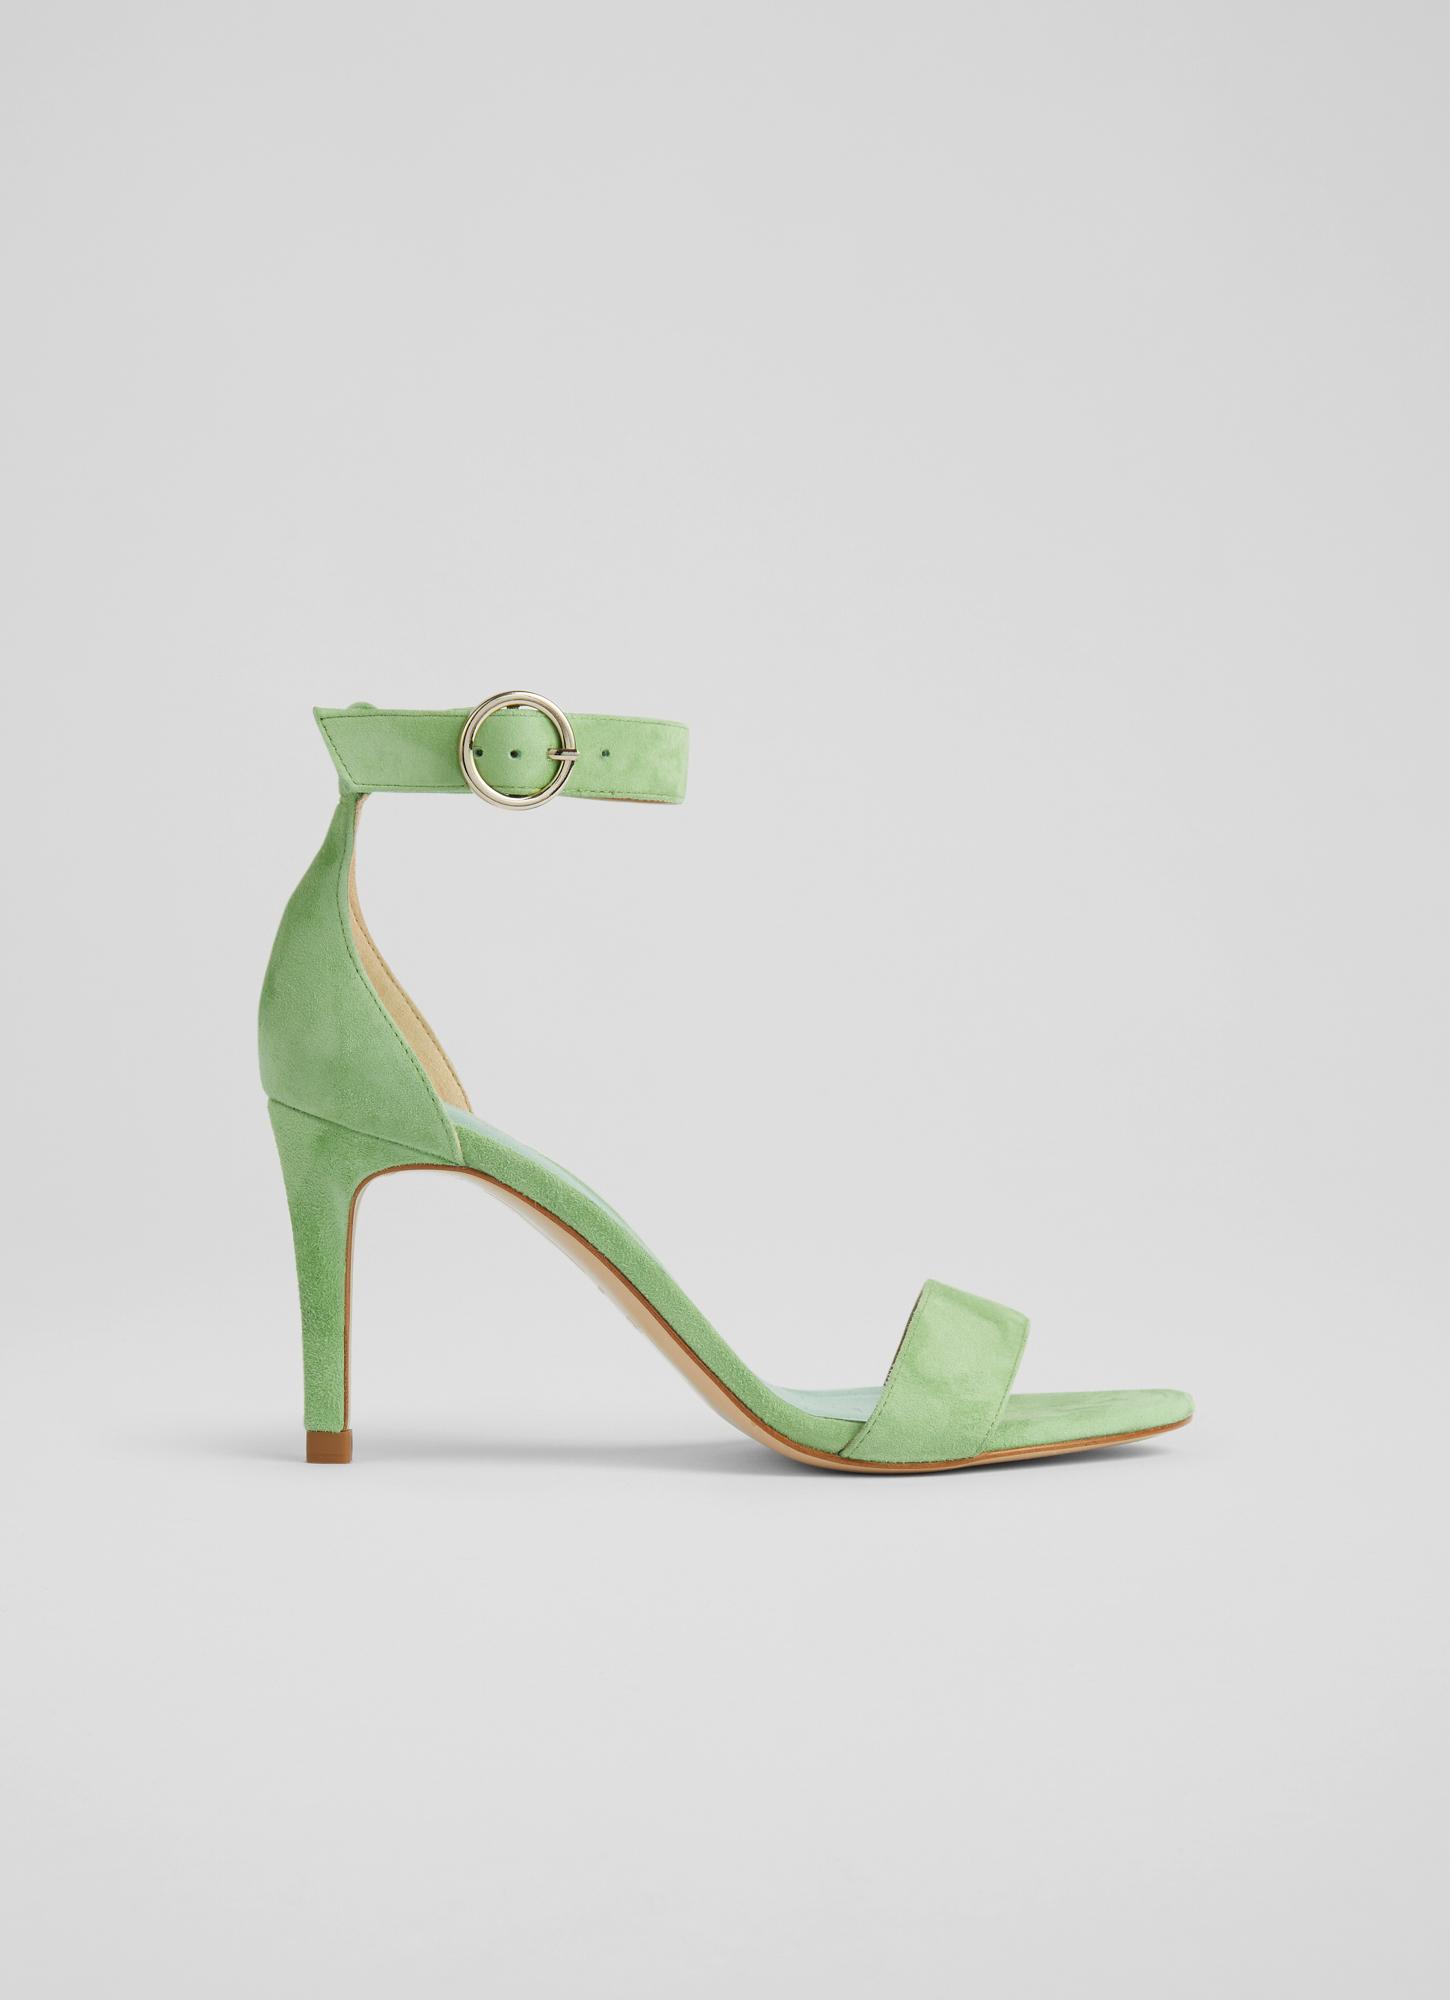 Harmony Green Velvet Crystal Trim Courts | Shoes | L.K.Bennett | Green  velvet shoes, Velvet block heels, Velvet dress shoes